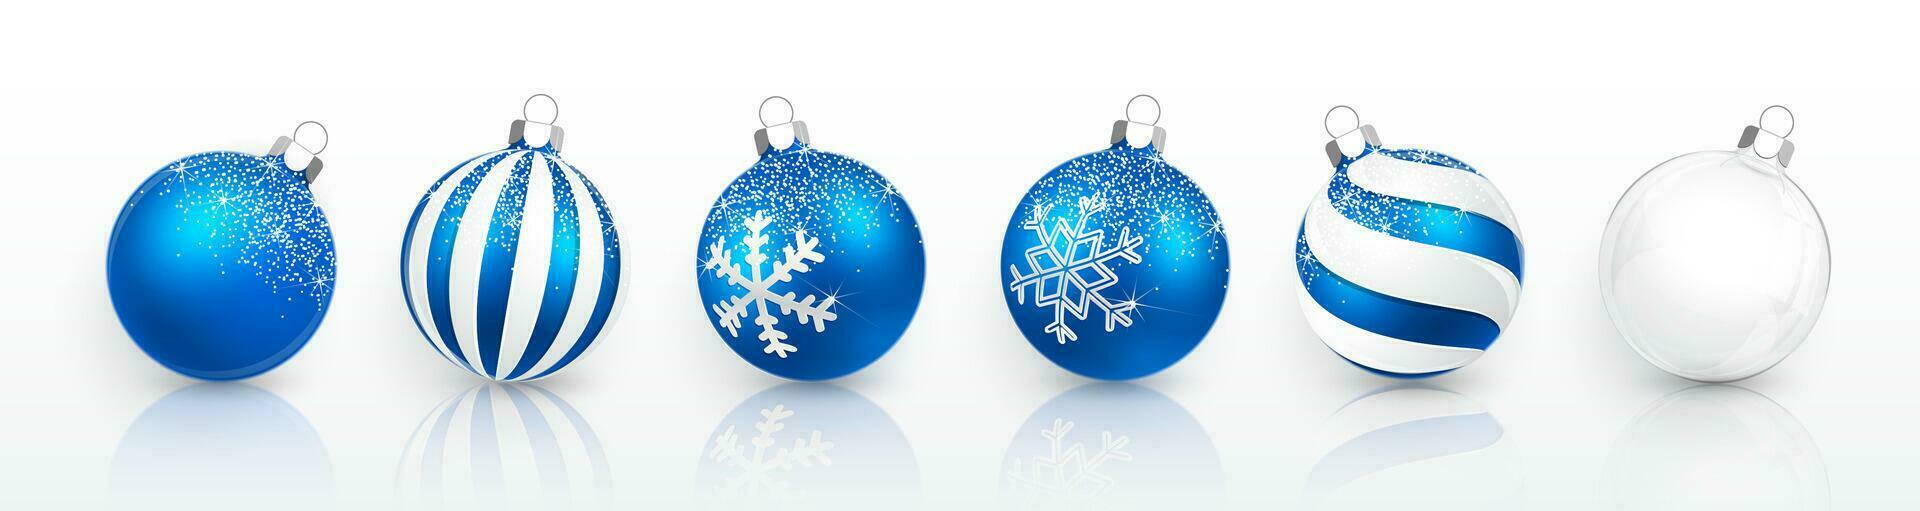 transparent und Blau Weihnachten Ball mit Schnee bewirken Satz. Weihnachten Glas Ball auf Weiß Hintergrund. Urlaub Dekoration Vorlage. Vektor Illustration